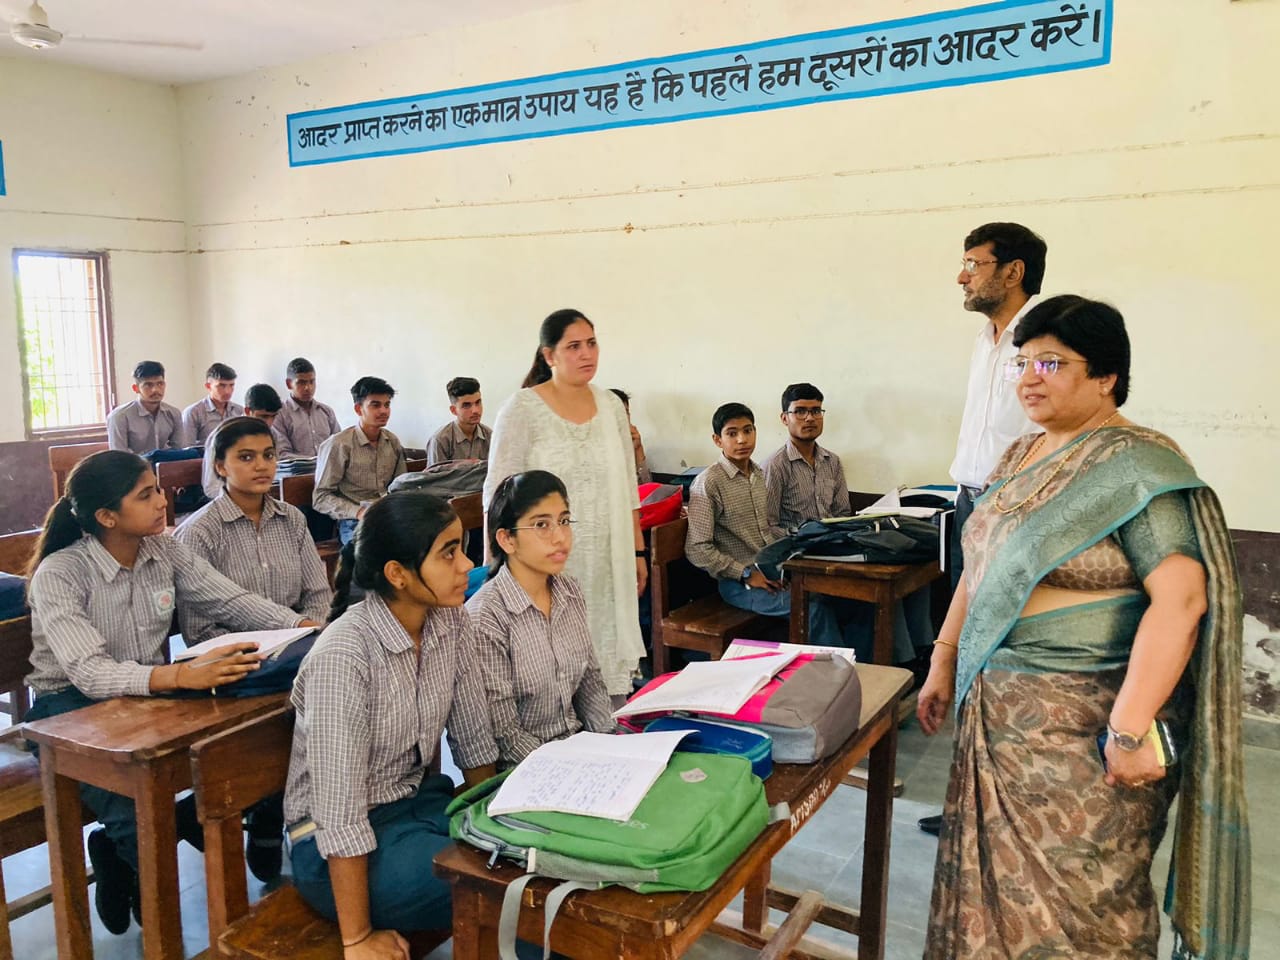 मंडल आयुक्त गीता भारती द्वारा आज राजकीय वरिष्ठ माध्यमिक विद्यालय बहबलपुर, आरोही मॉडल सीनियर सेकेंडरी स्कूल गैबीपुर एवं आरोही मॉडल सीनियर सेकेंडरी स्कूल घिराय का निरीक्षण किया गया।